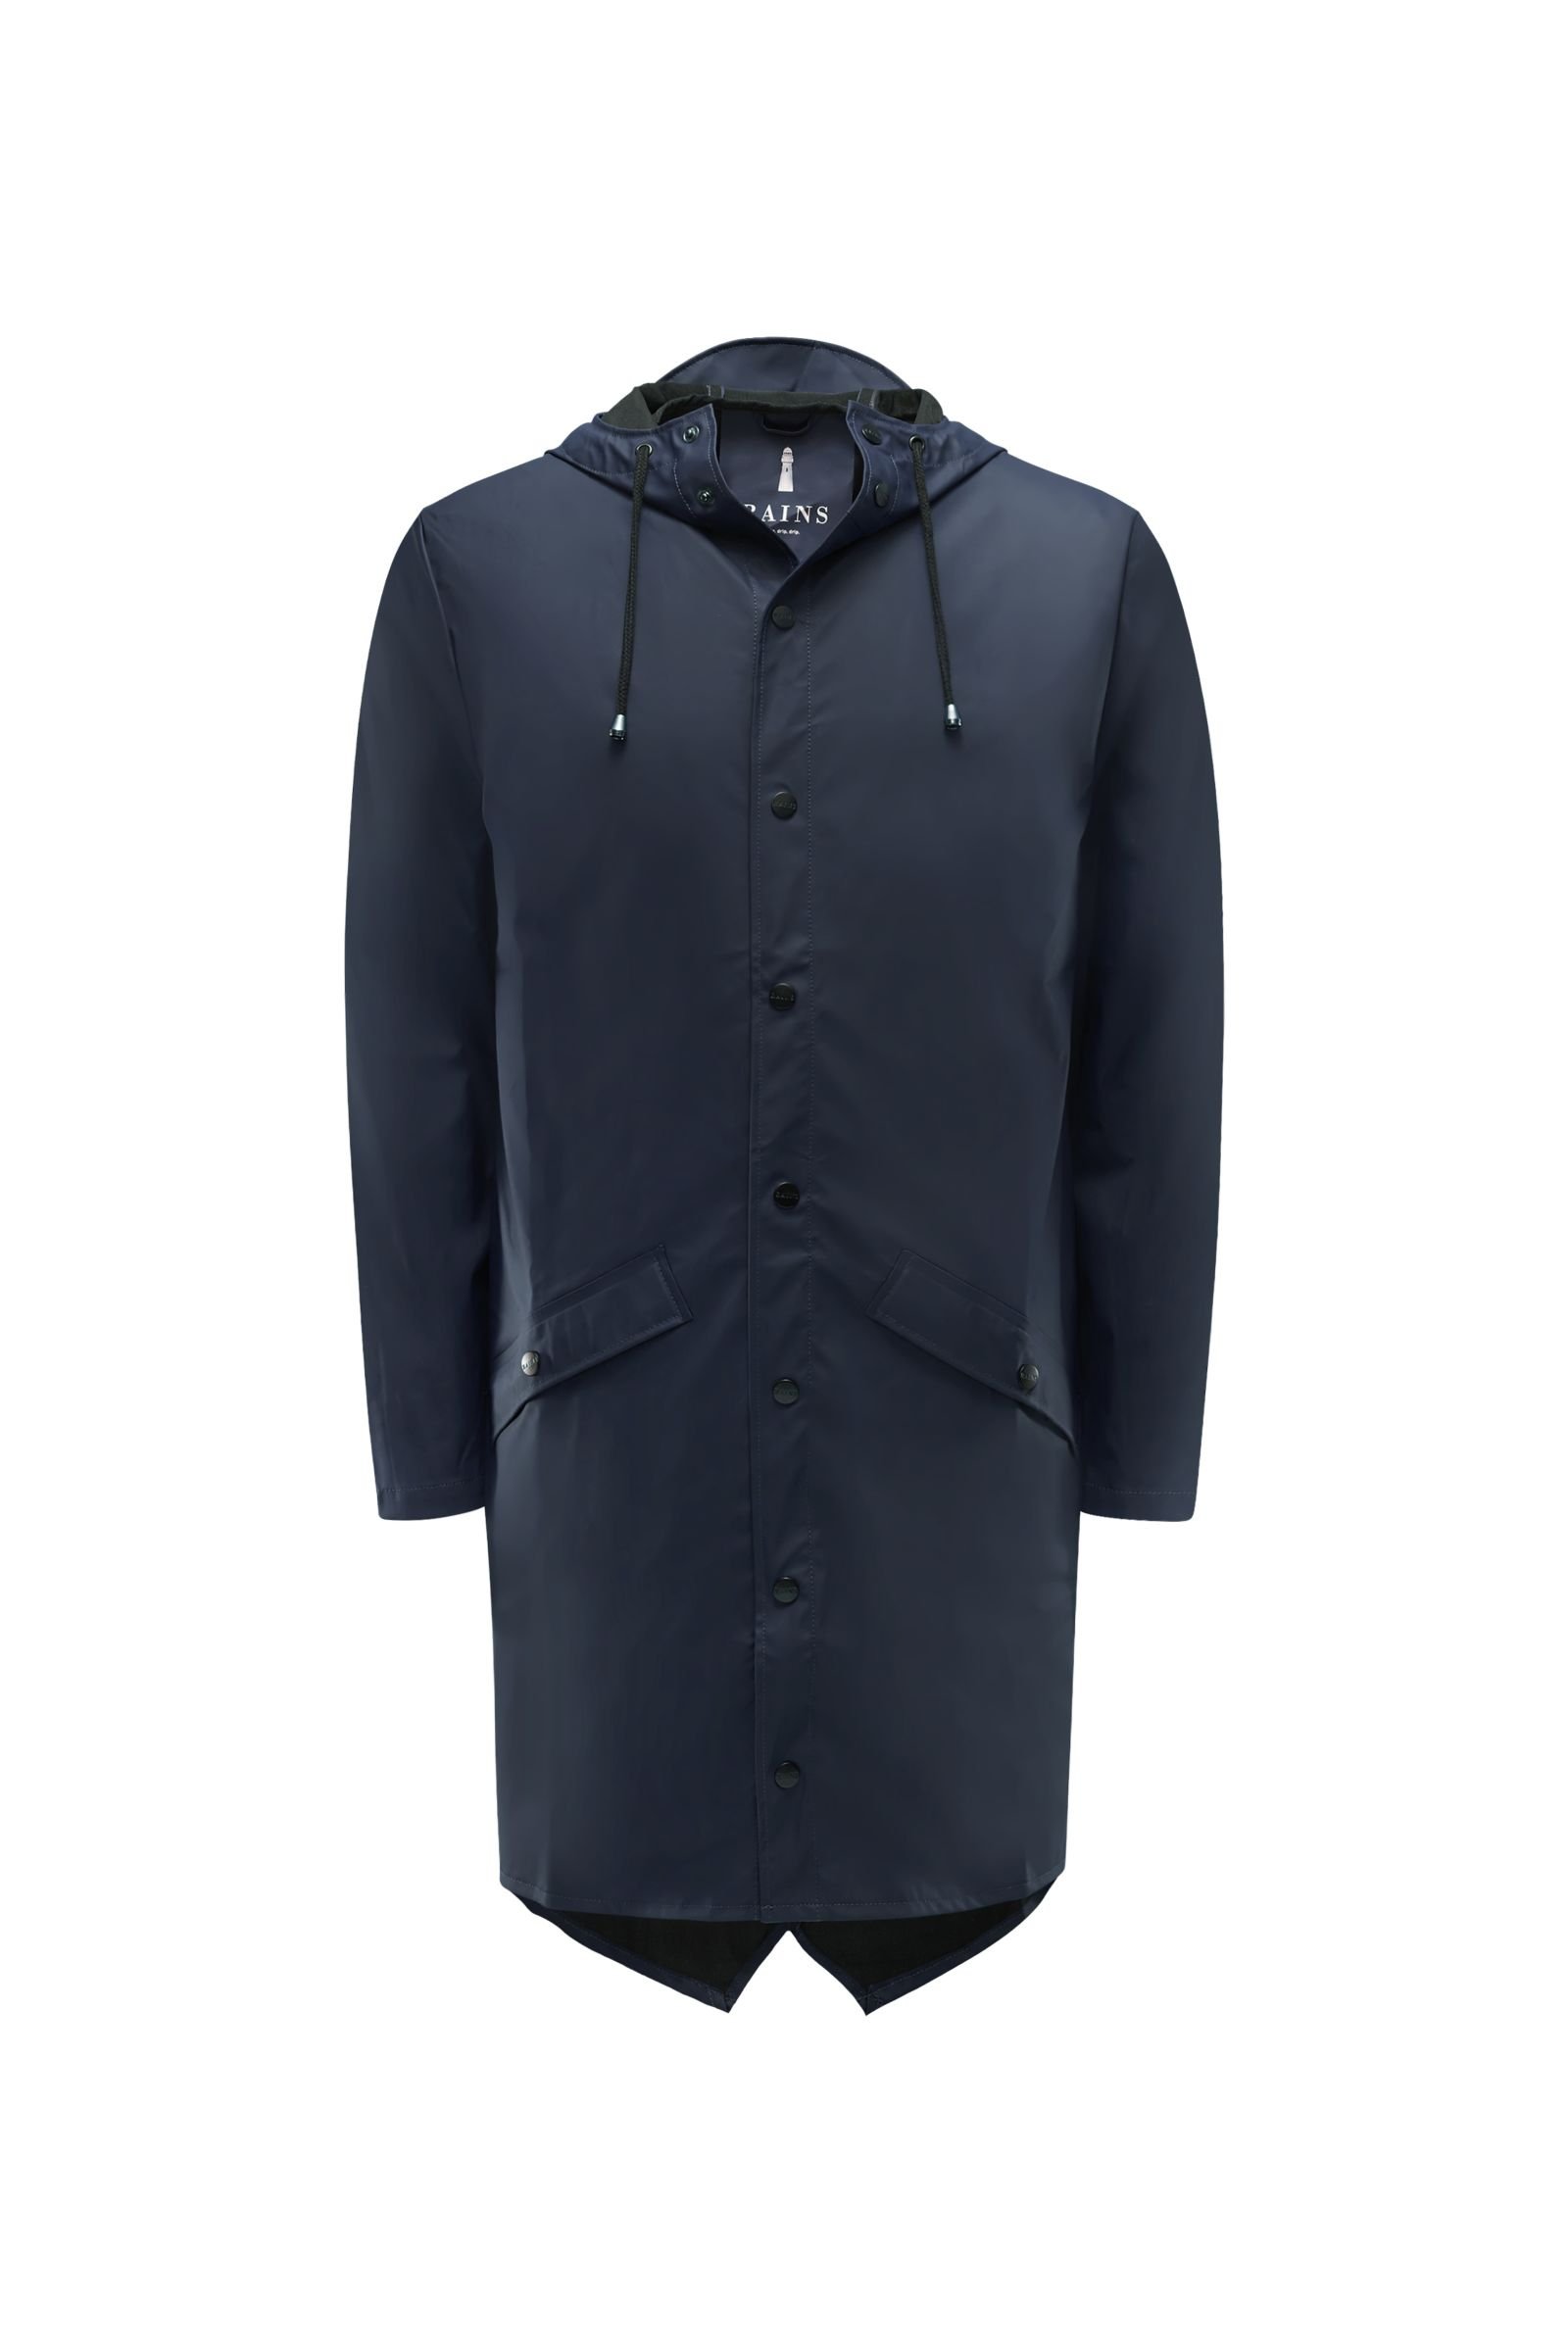 Rain coat 'Long jacket' navy